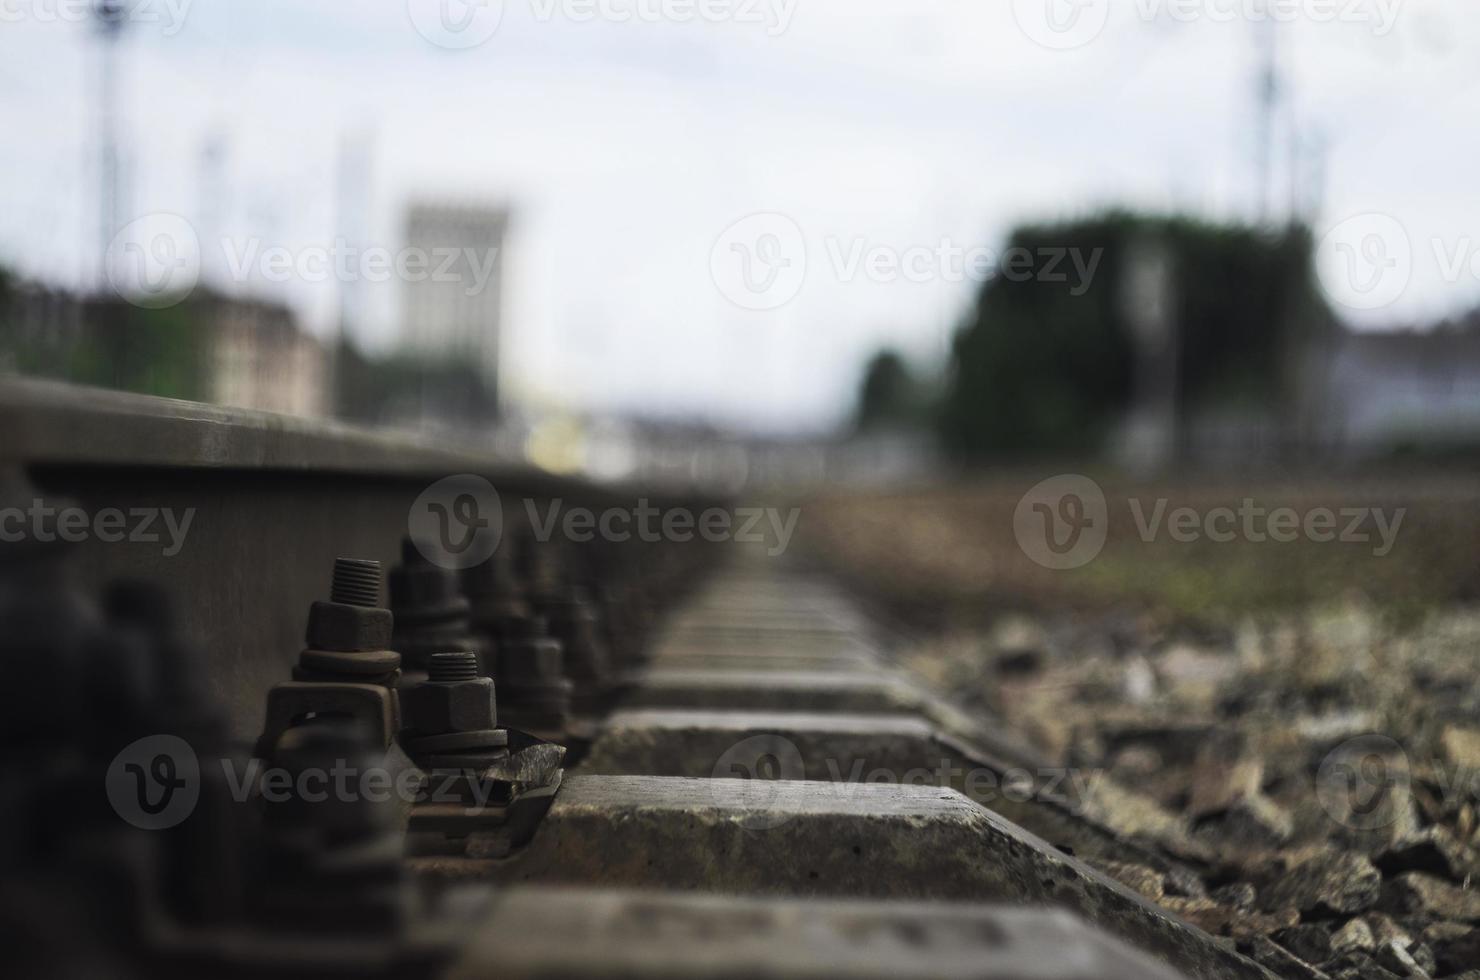 detalles del ferrocarril con fondo borroso foto